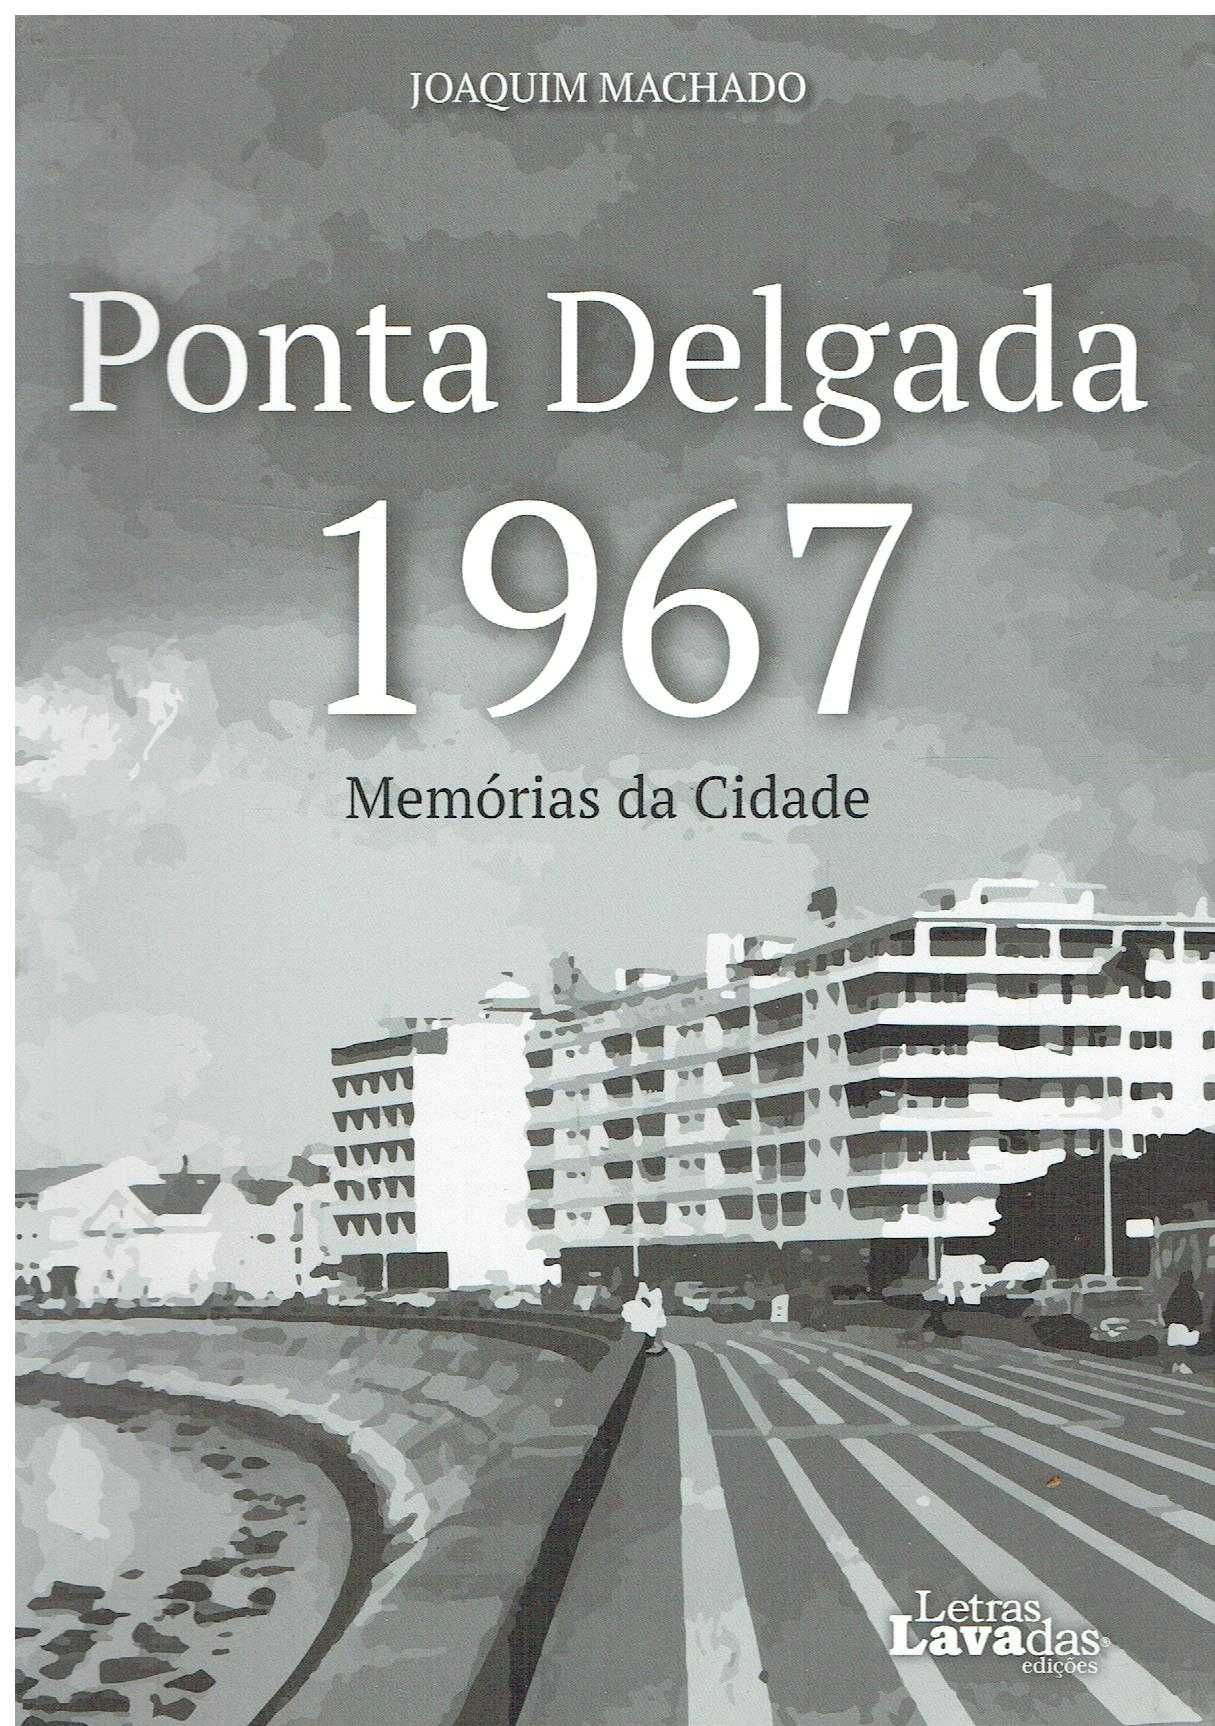 6976

Ponta Delgada 1967 : memórias da cidade  
de Joaquim Machado